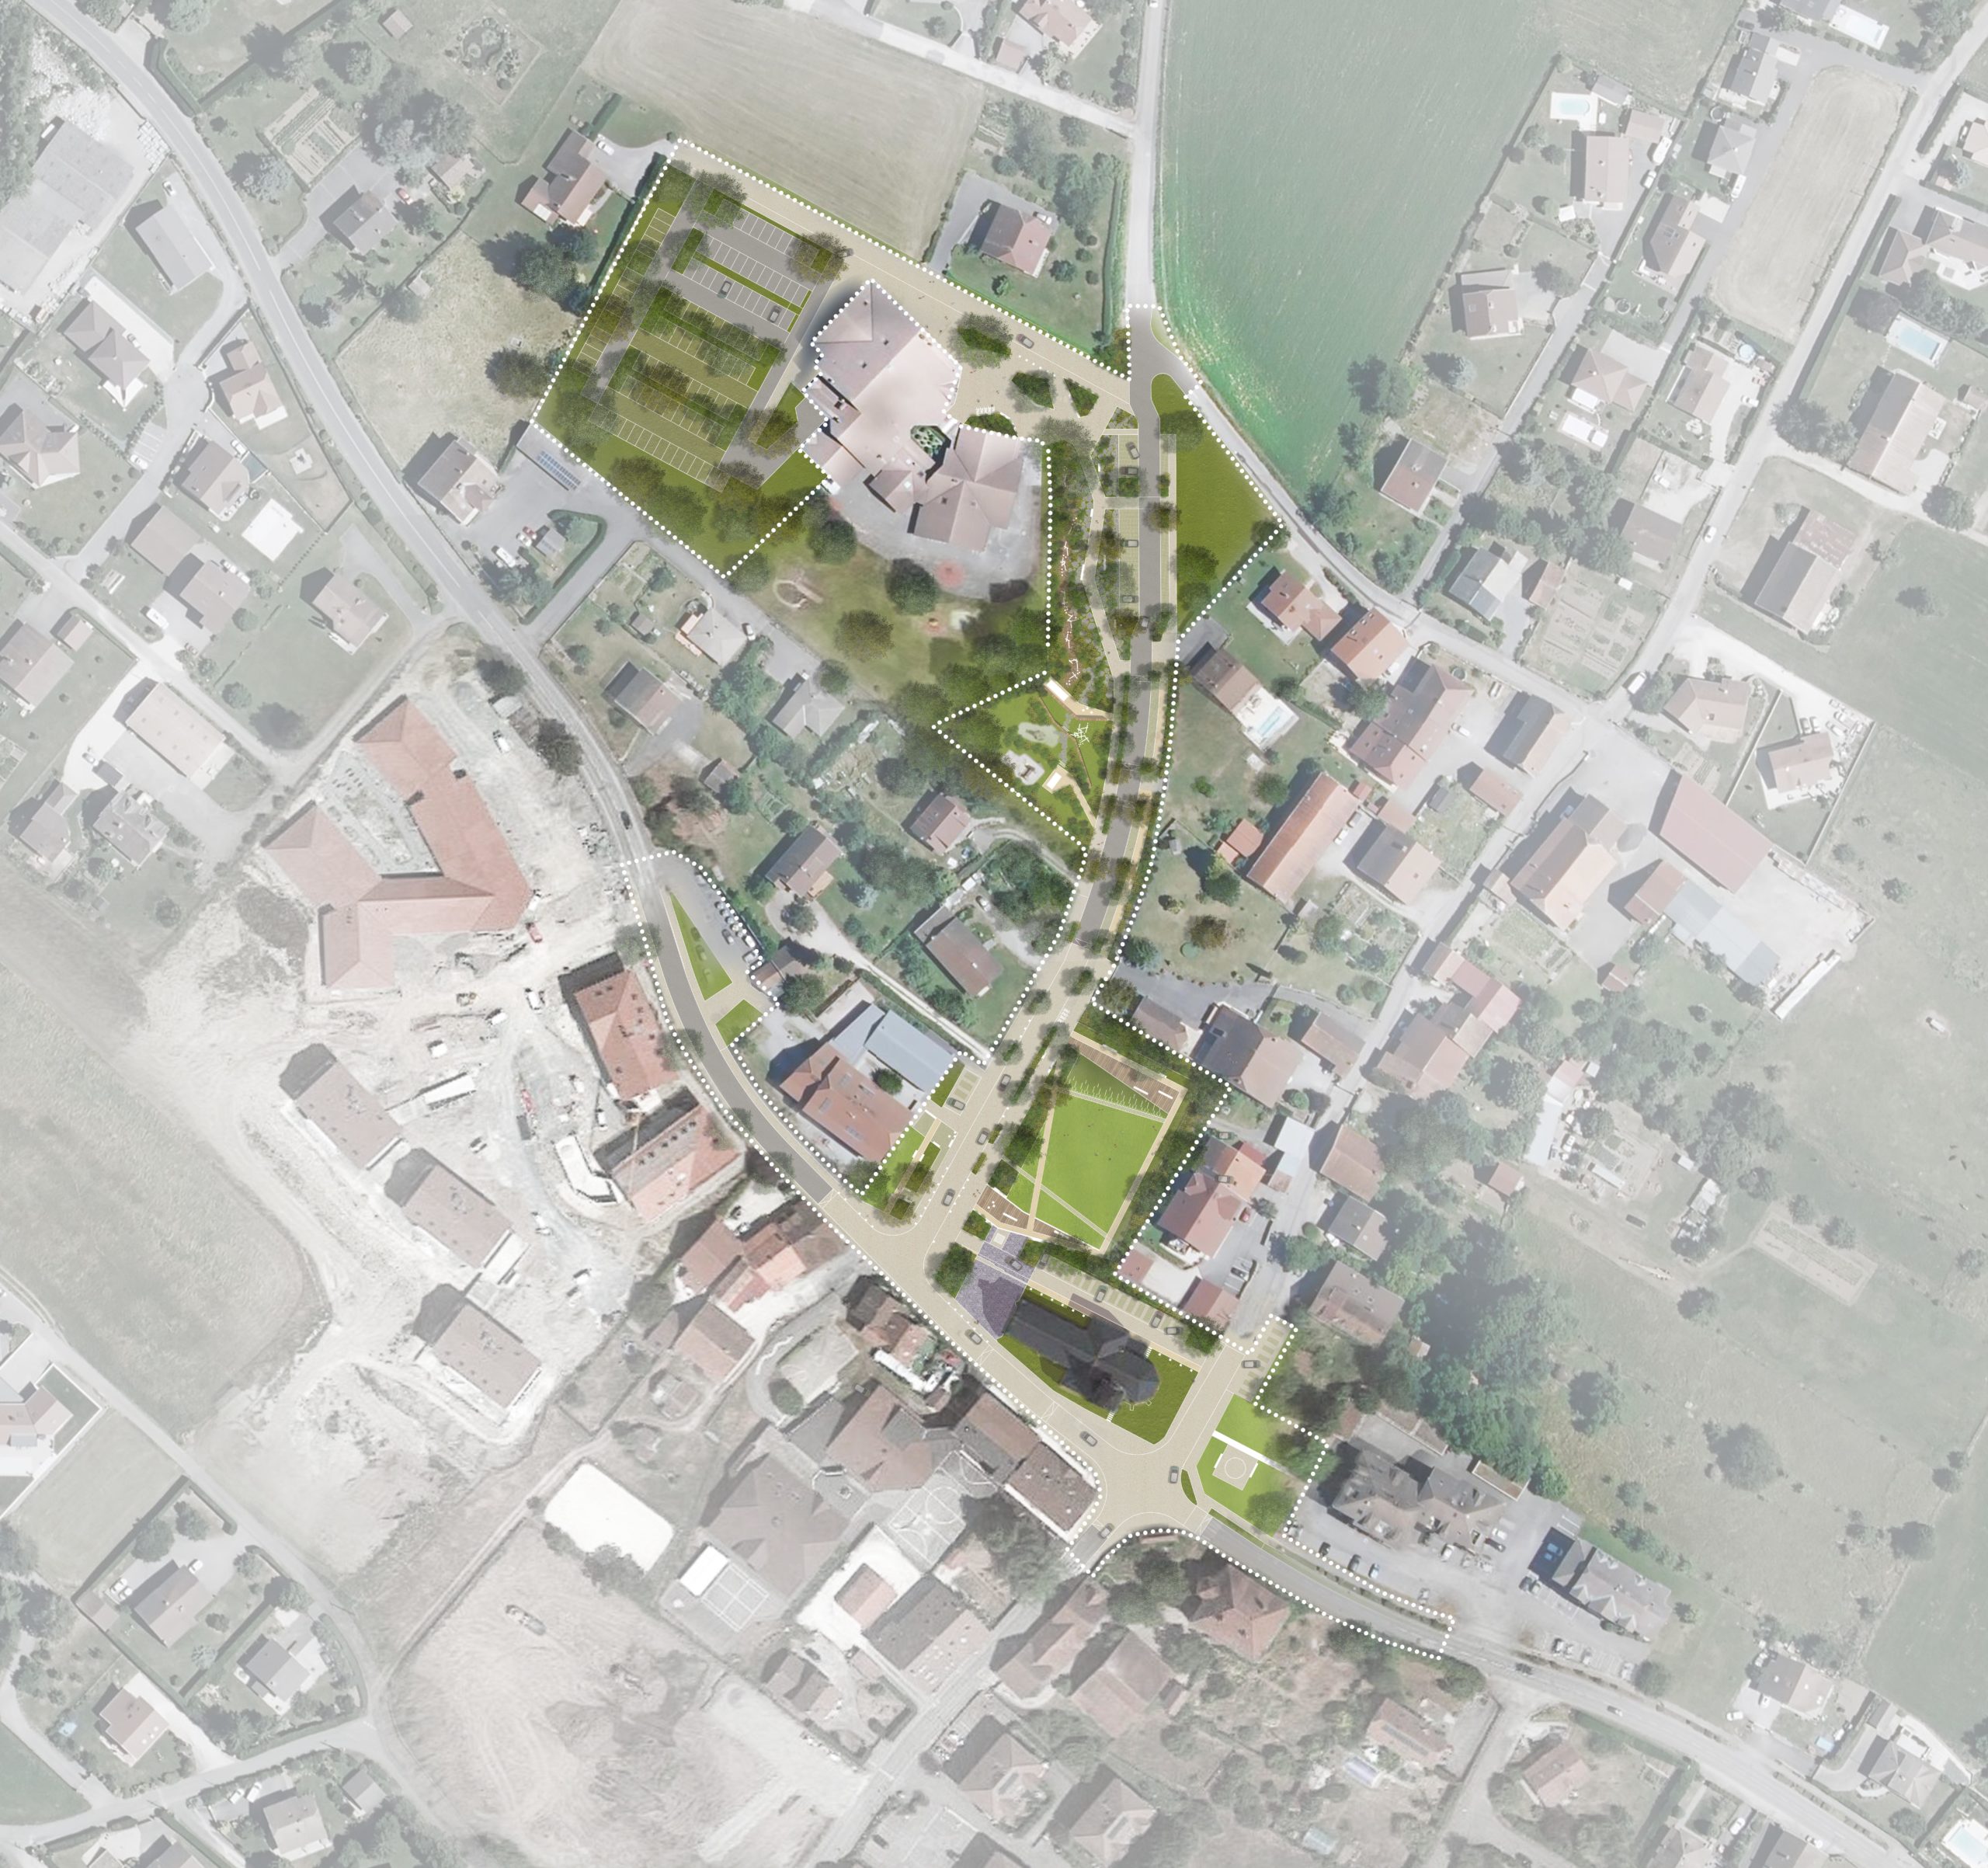 LJN - Paysagiste concepteur - Haute Savoie - Amancy - Centre bourg - Plan masse - Espace public - Parc - Aire de jeux